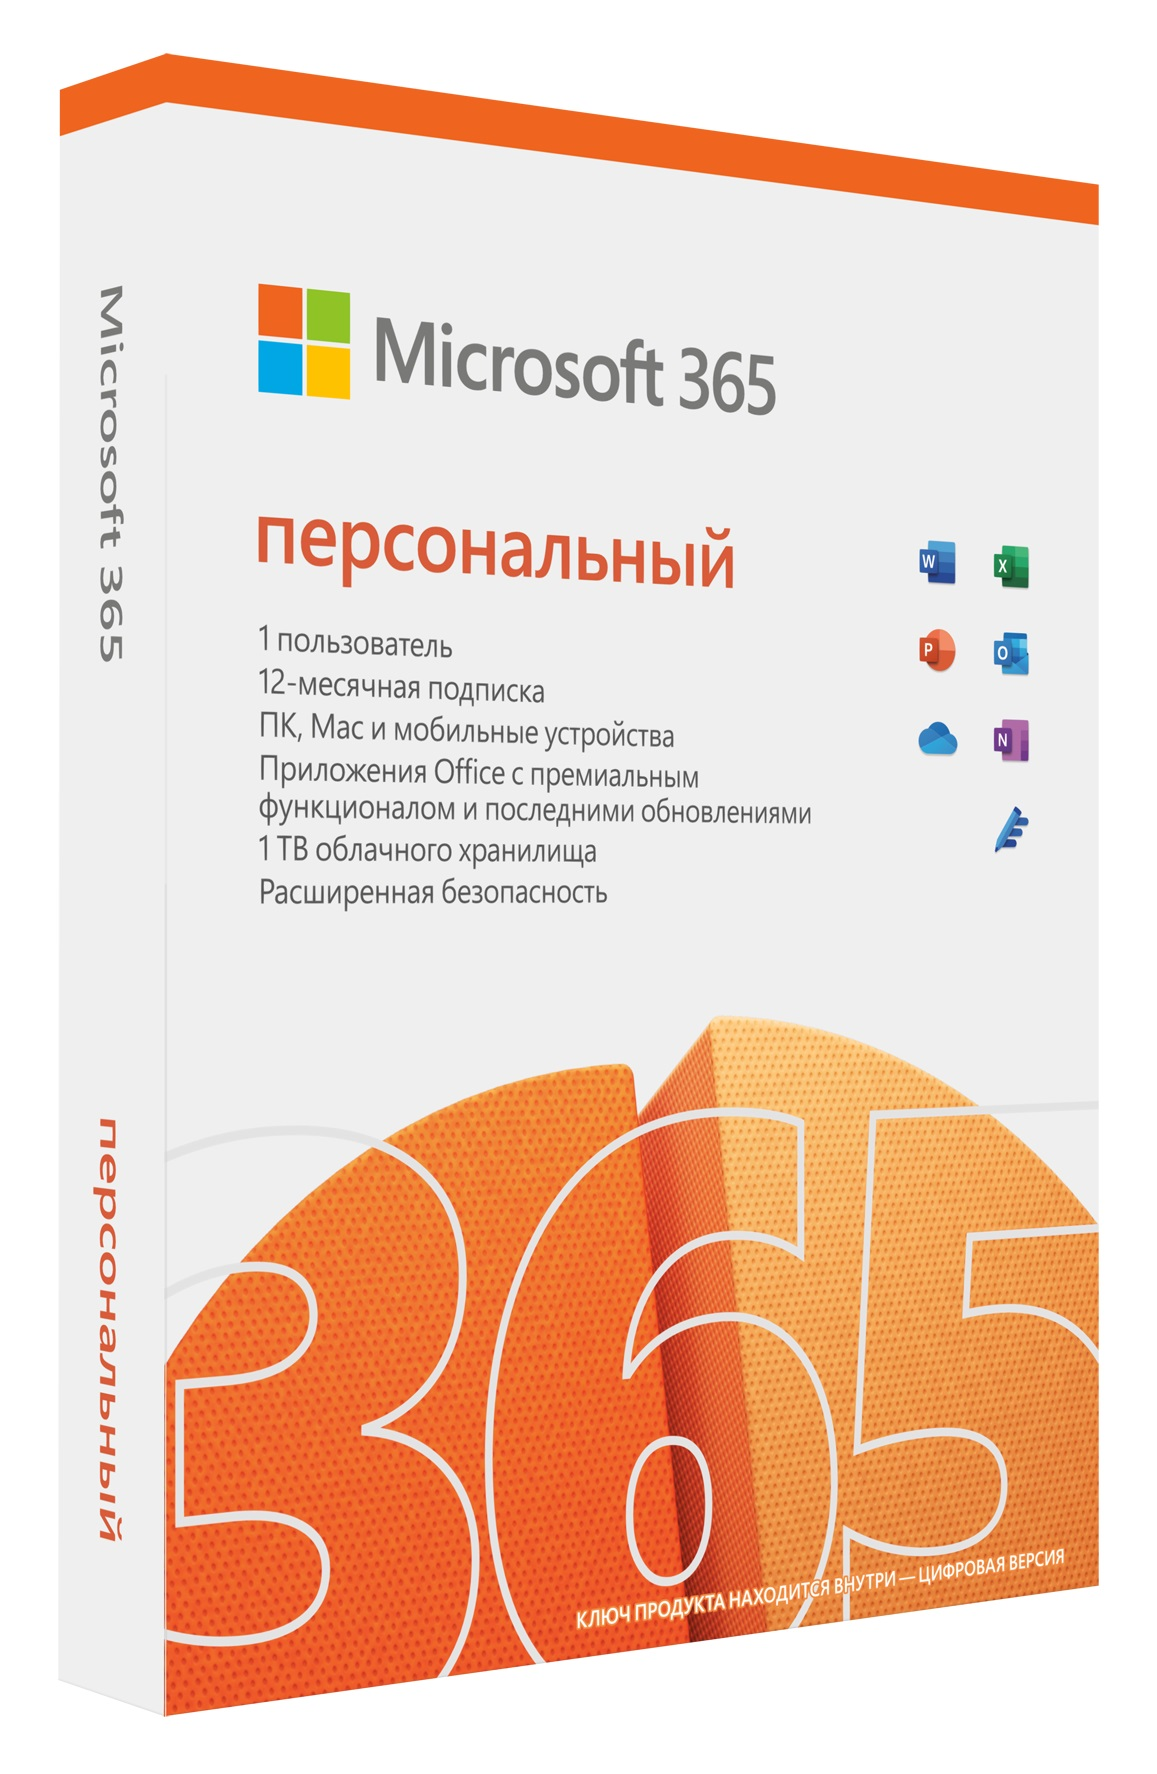 Решение проблем с активацией и лицензированием Microsoft 365